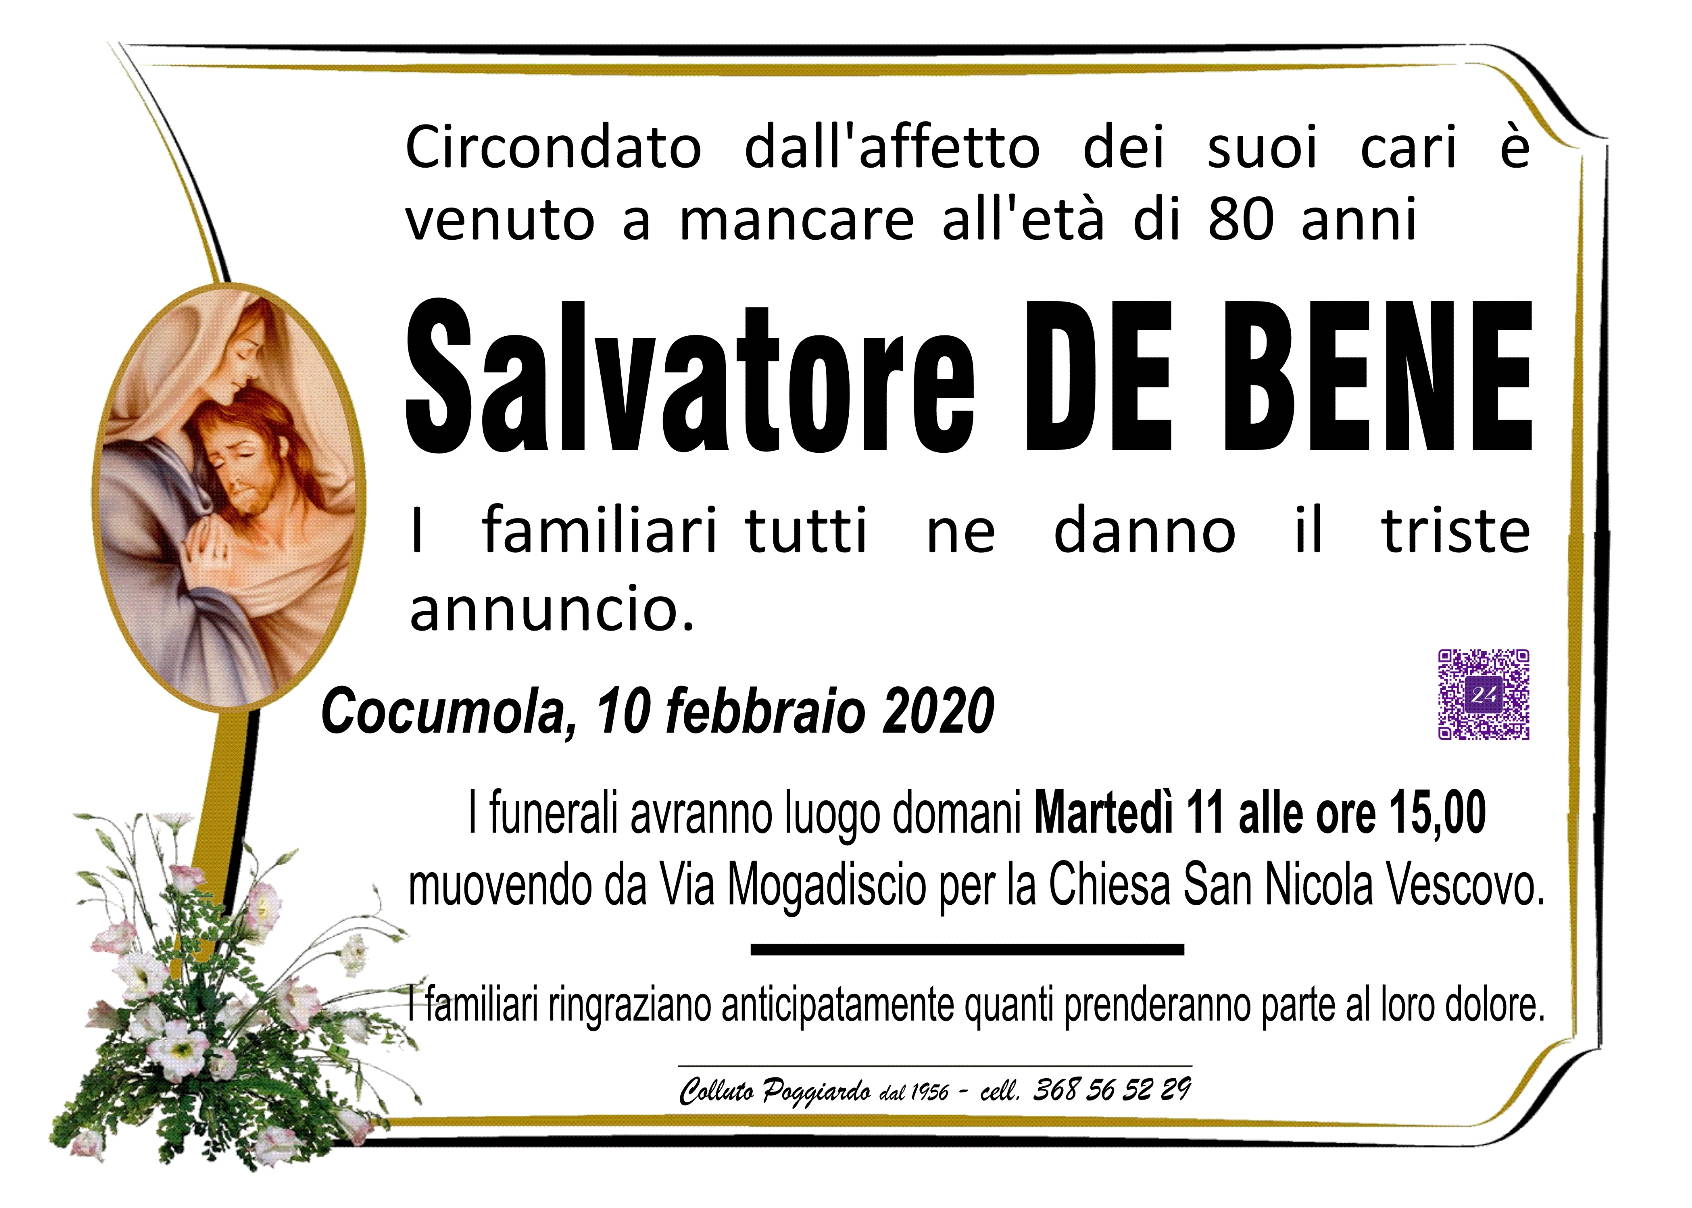 Salvatore De Bene